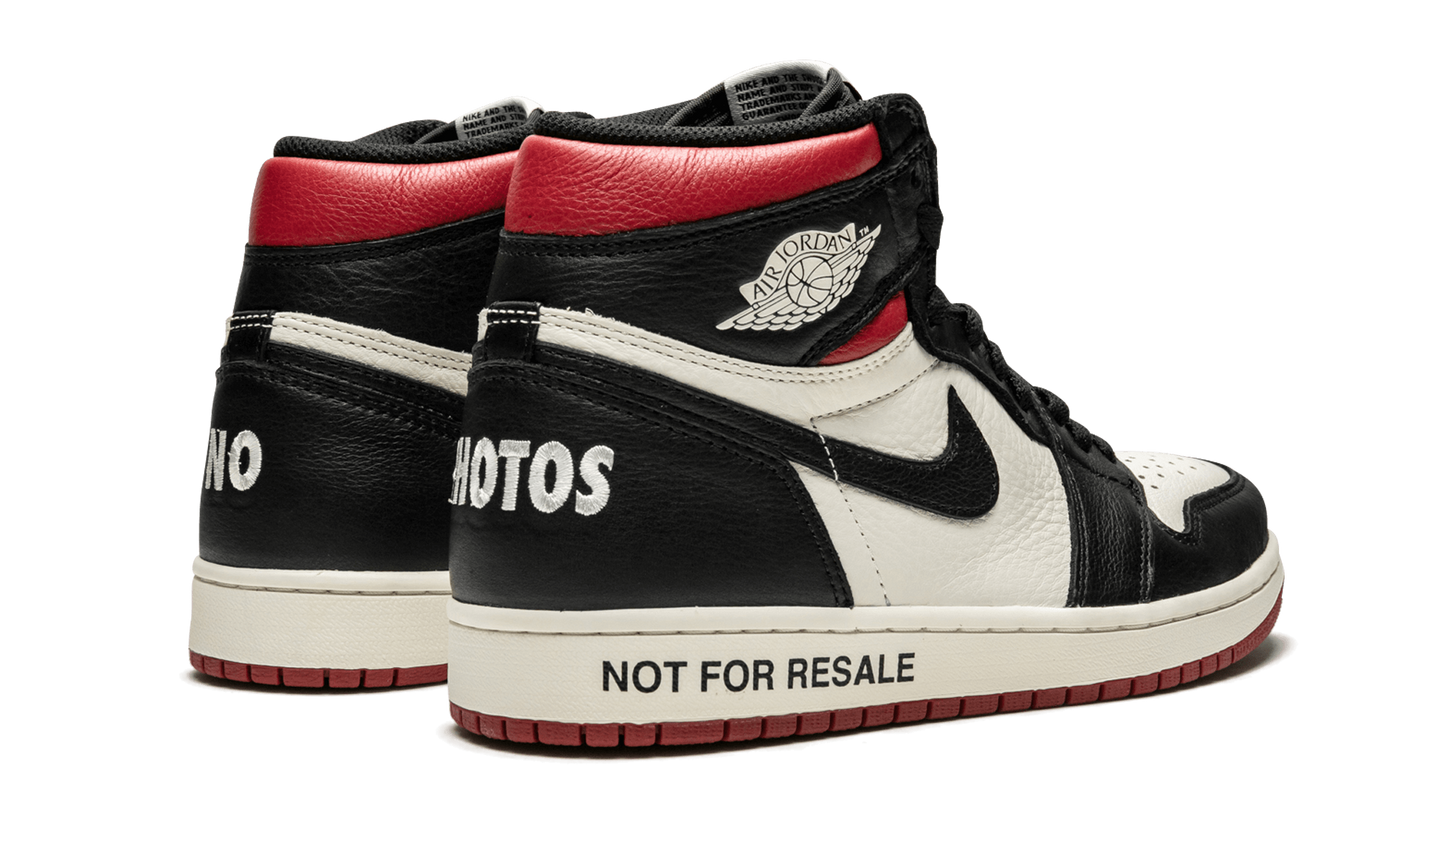 Air Jordan 1 Retro High OG NRG “Not For Resale” Varsity Red - 861428 106 | Grailshop